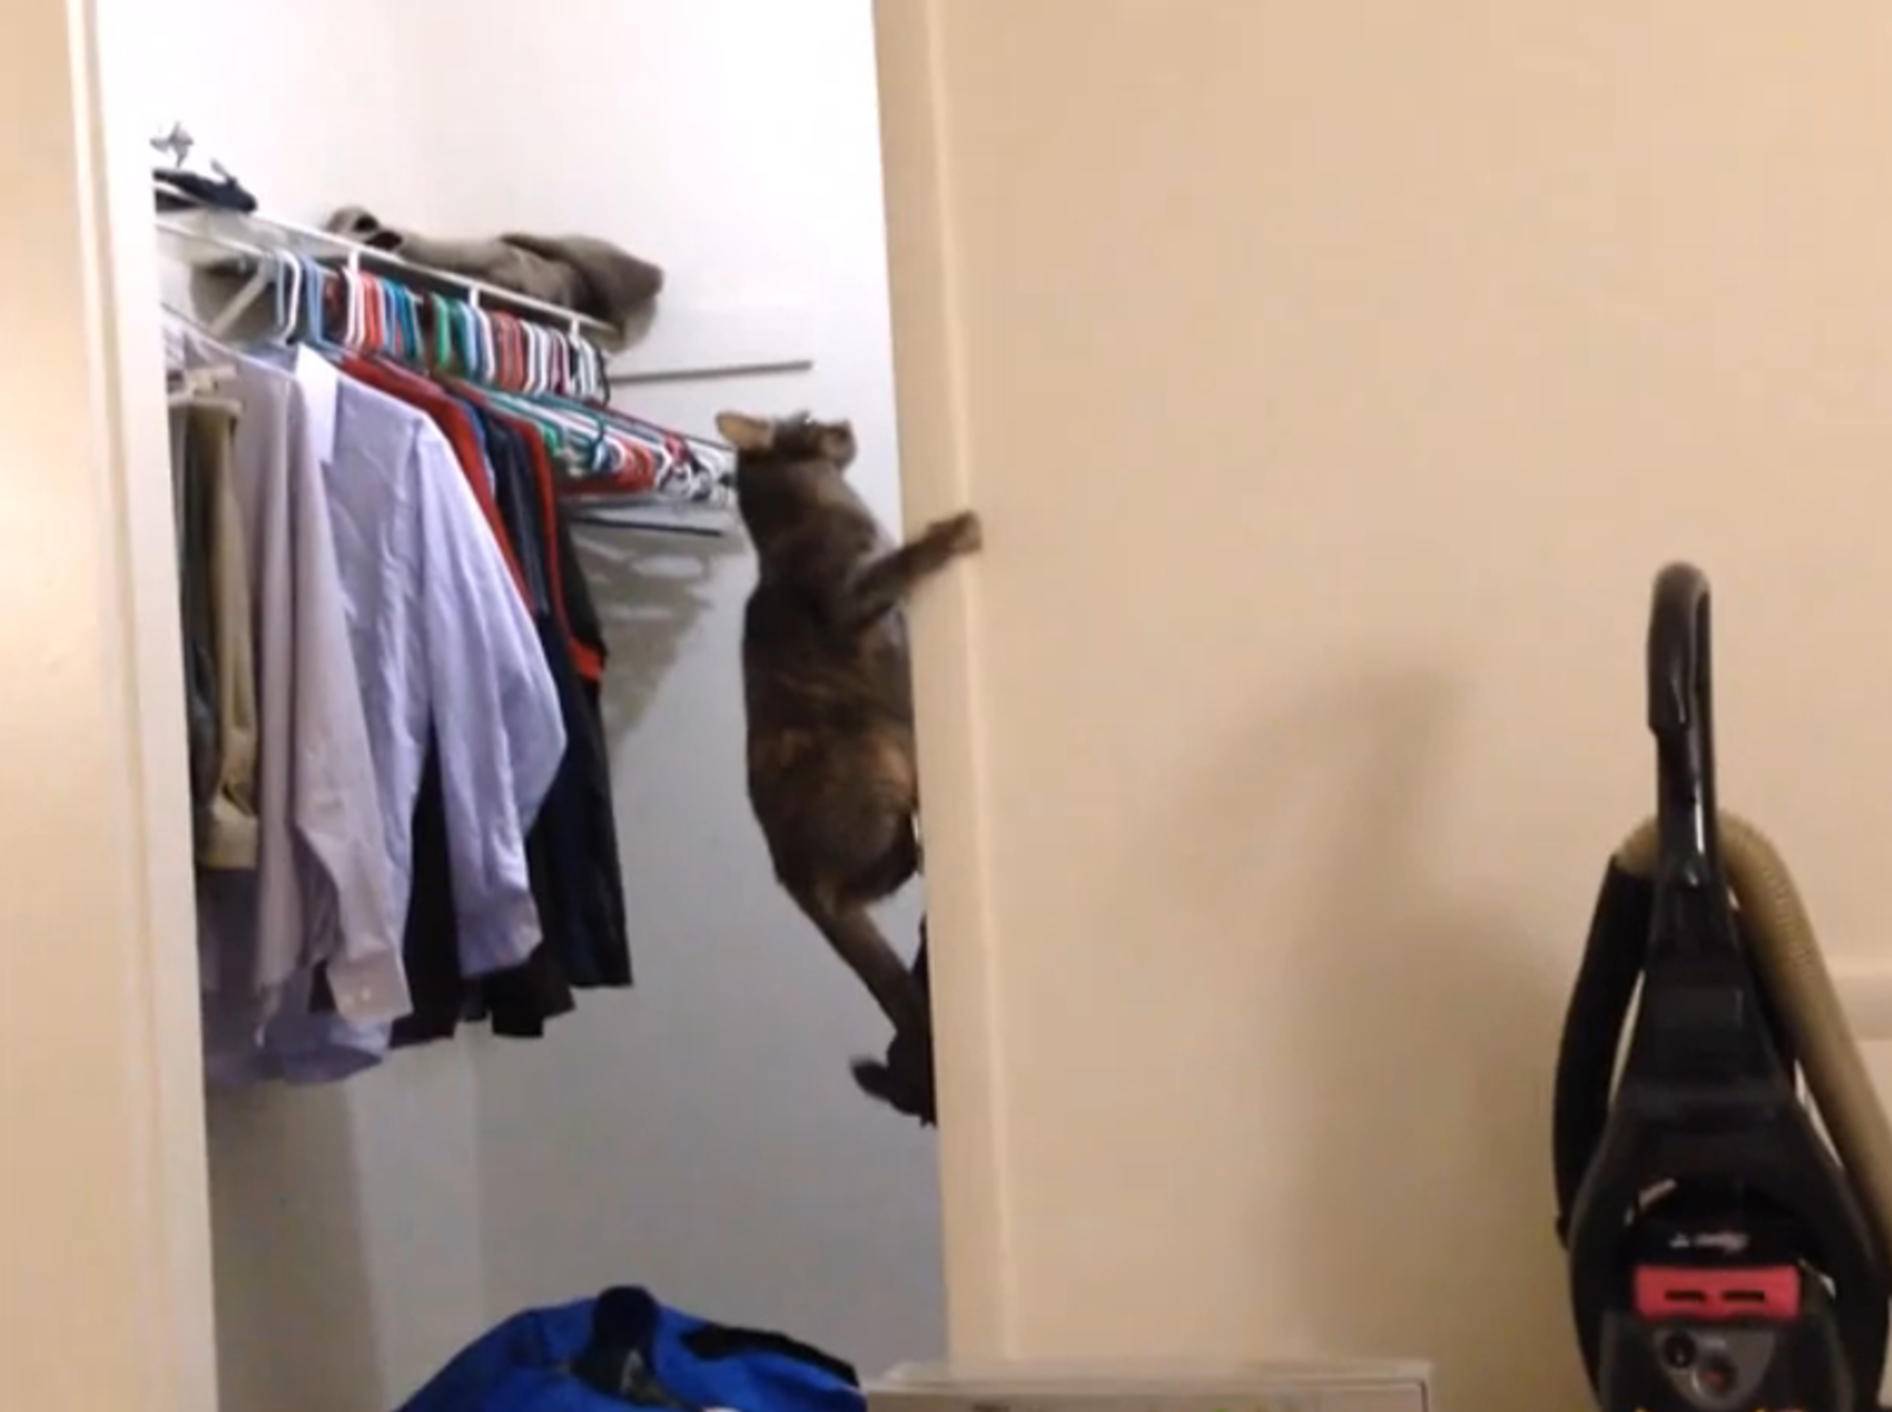 Katze Luna total aufgedreht und verspielt – Bild: YouTube / emlodrone